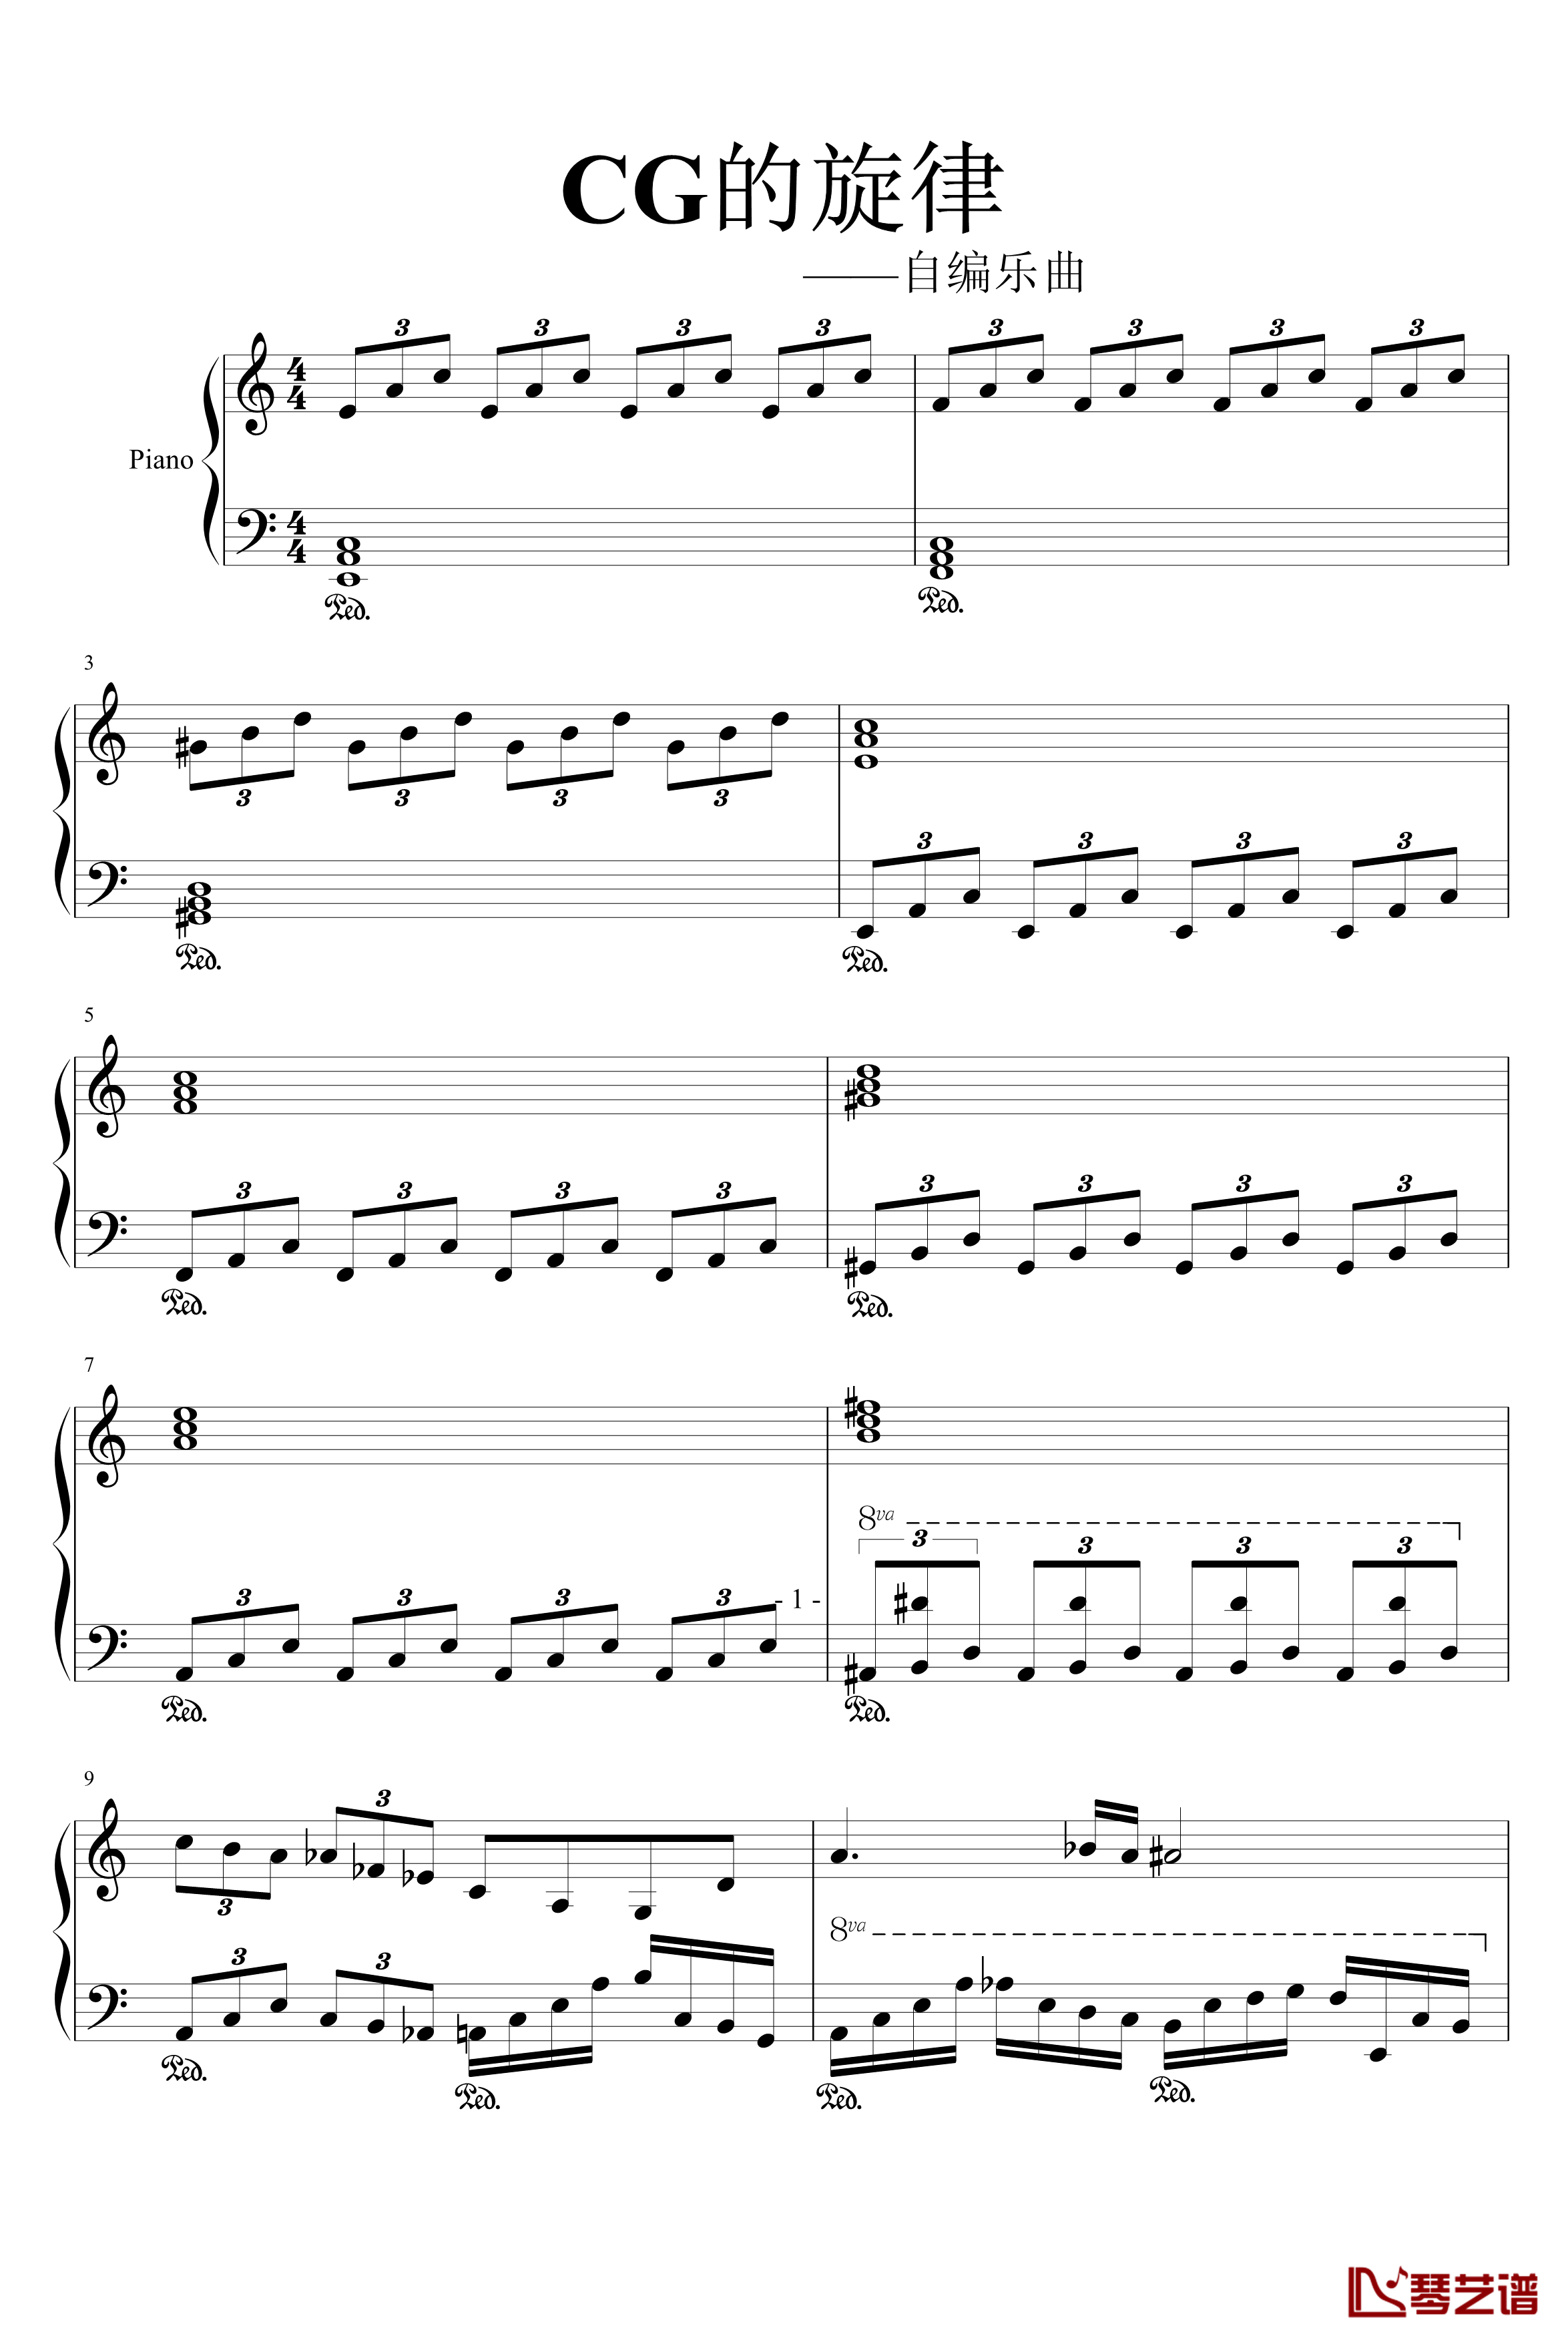 CG的旋律钢琴谱-97525xc1